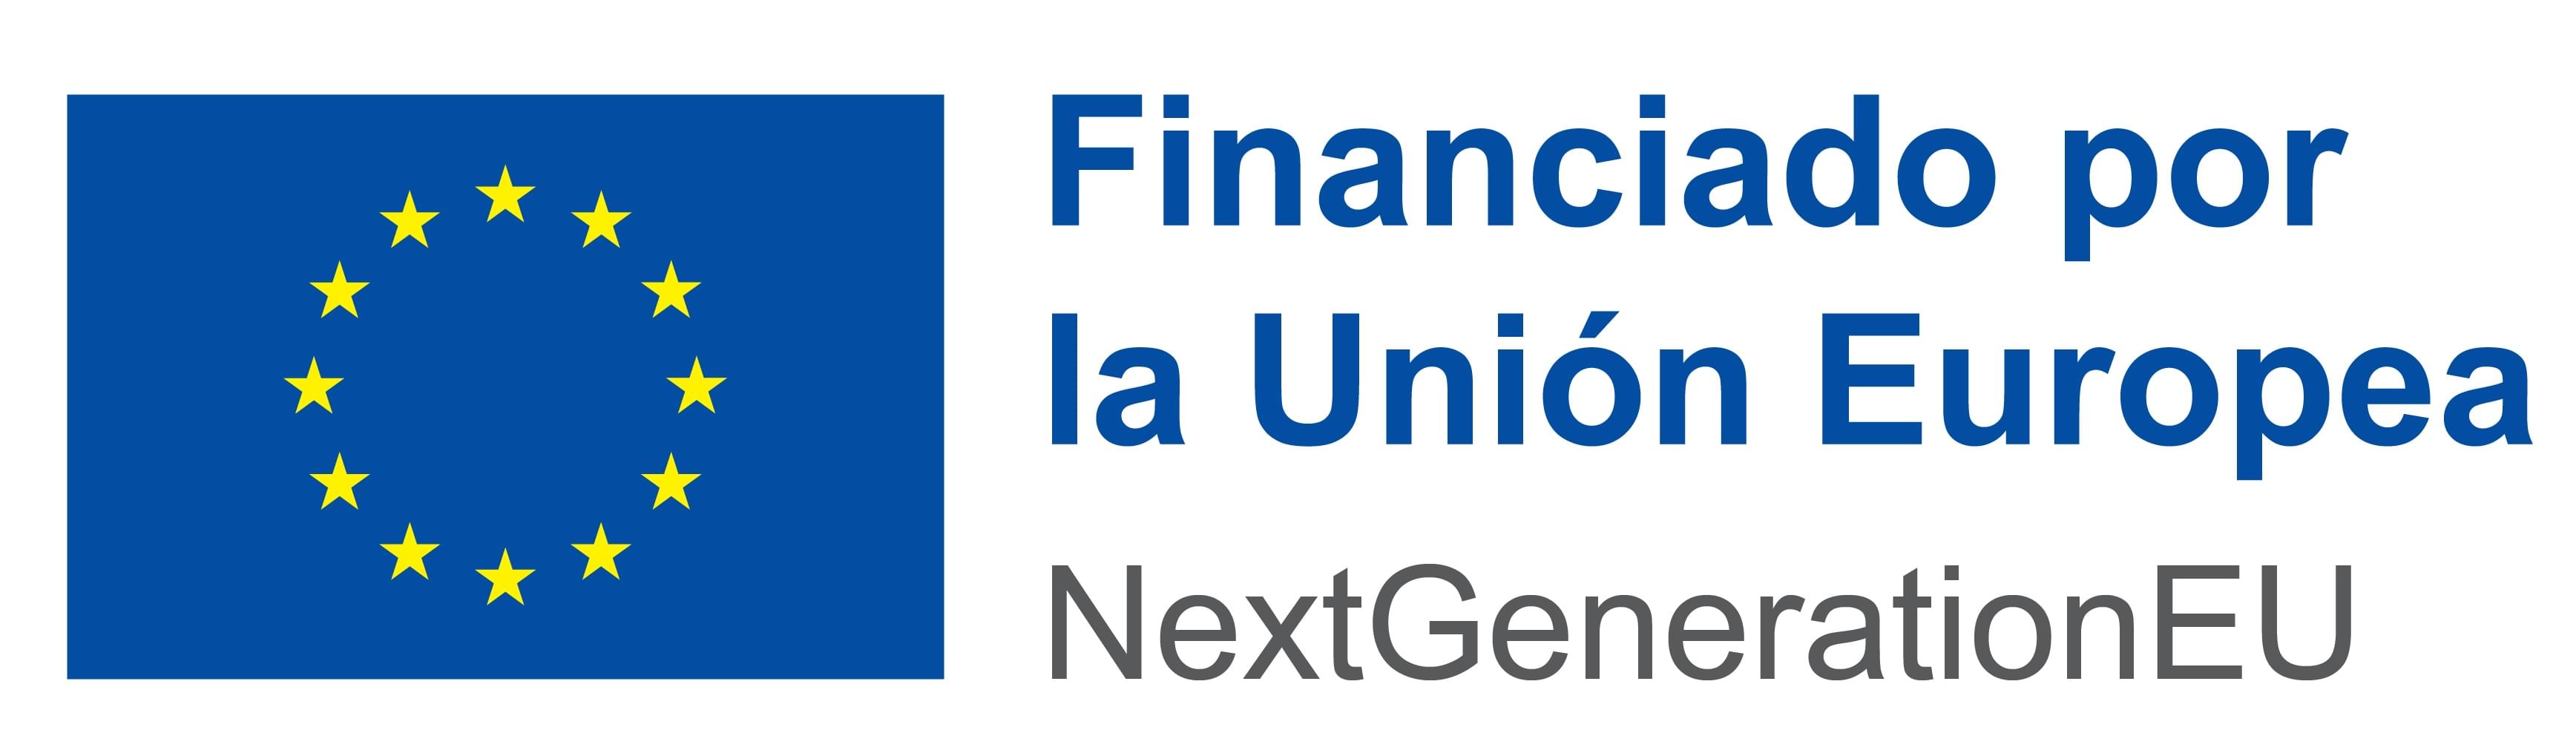 Sello: Financiado por la Unión Europea | NextGenerationEU